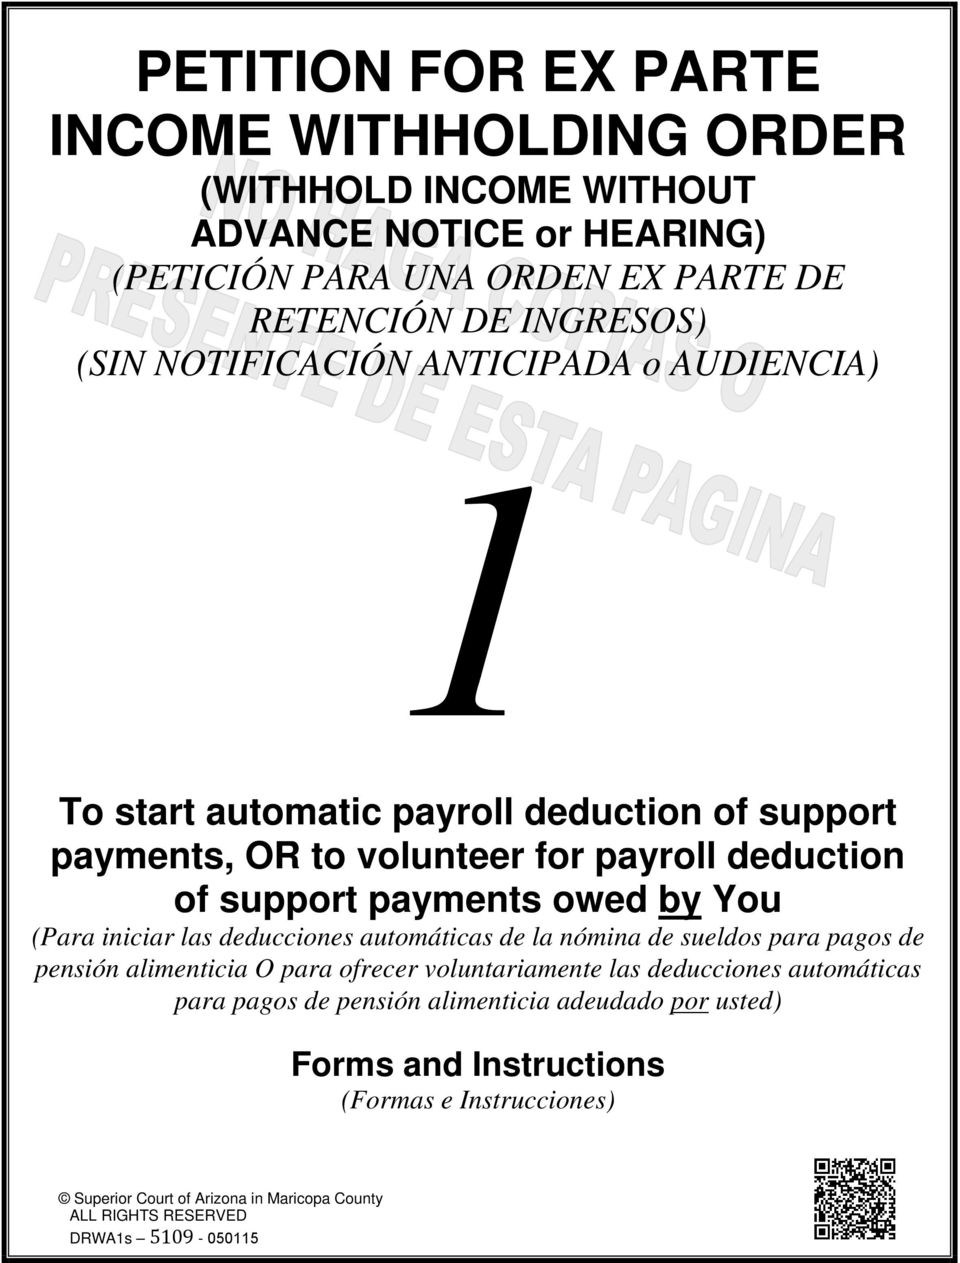 You (Para iniciar las deducciones automáticas de la nómina de sueldos para pagos de pensión alimenticia O para ofrecer voluntariamente las deducciones automáticas